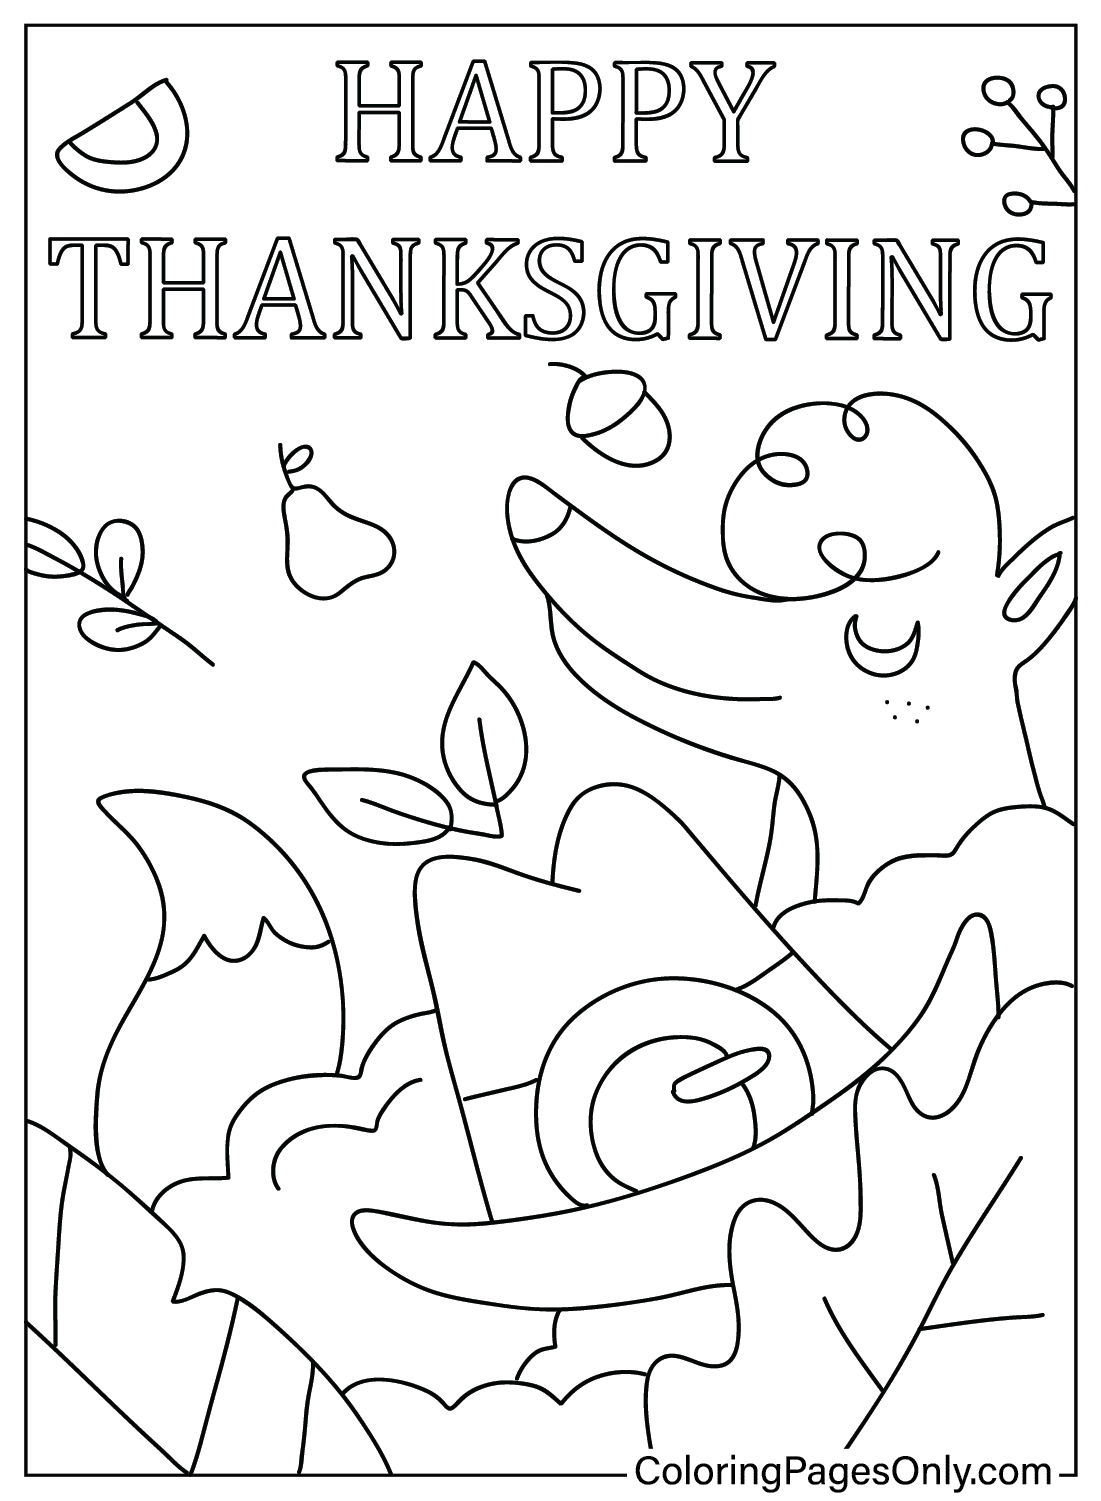 Раскраски для взрослых на День Благодарения